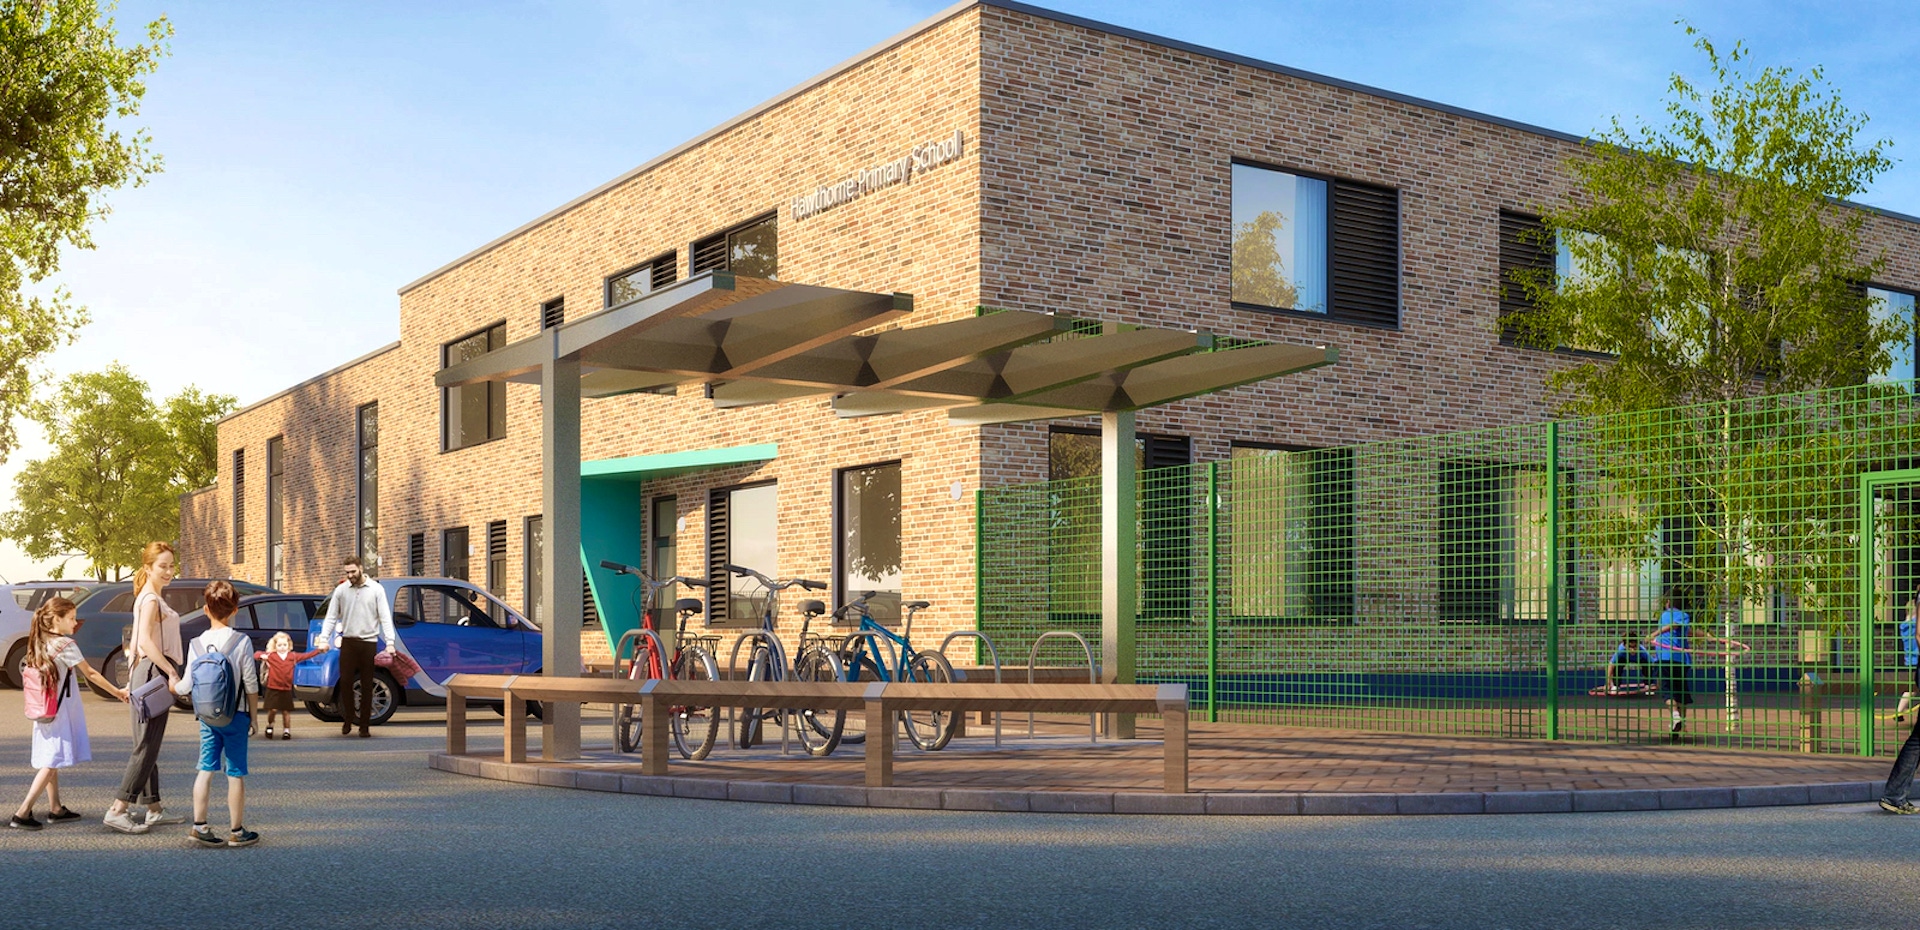 CGI of a primary school building